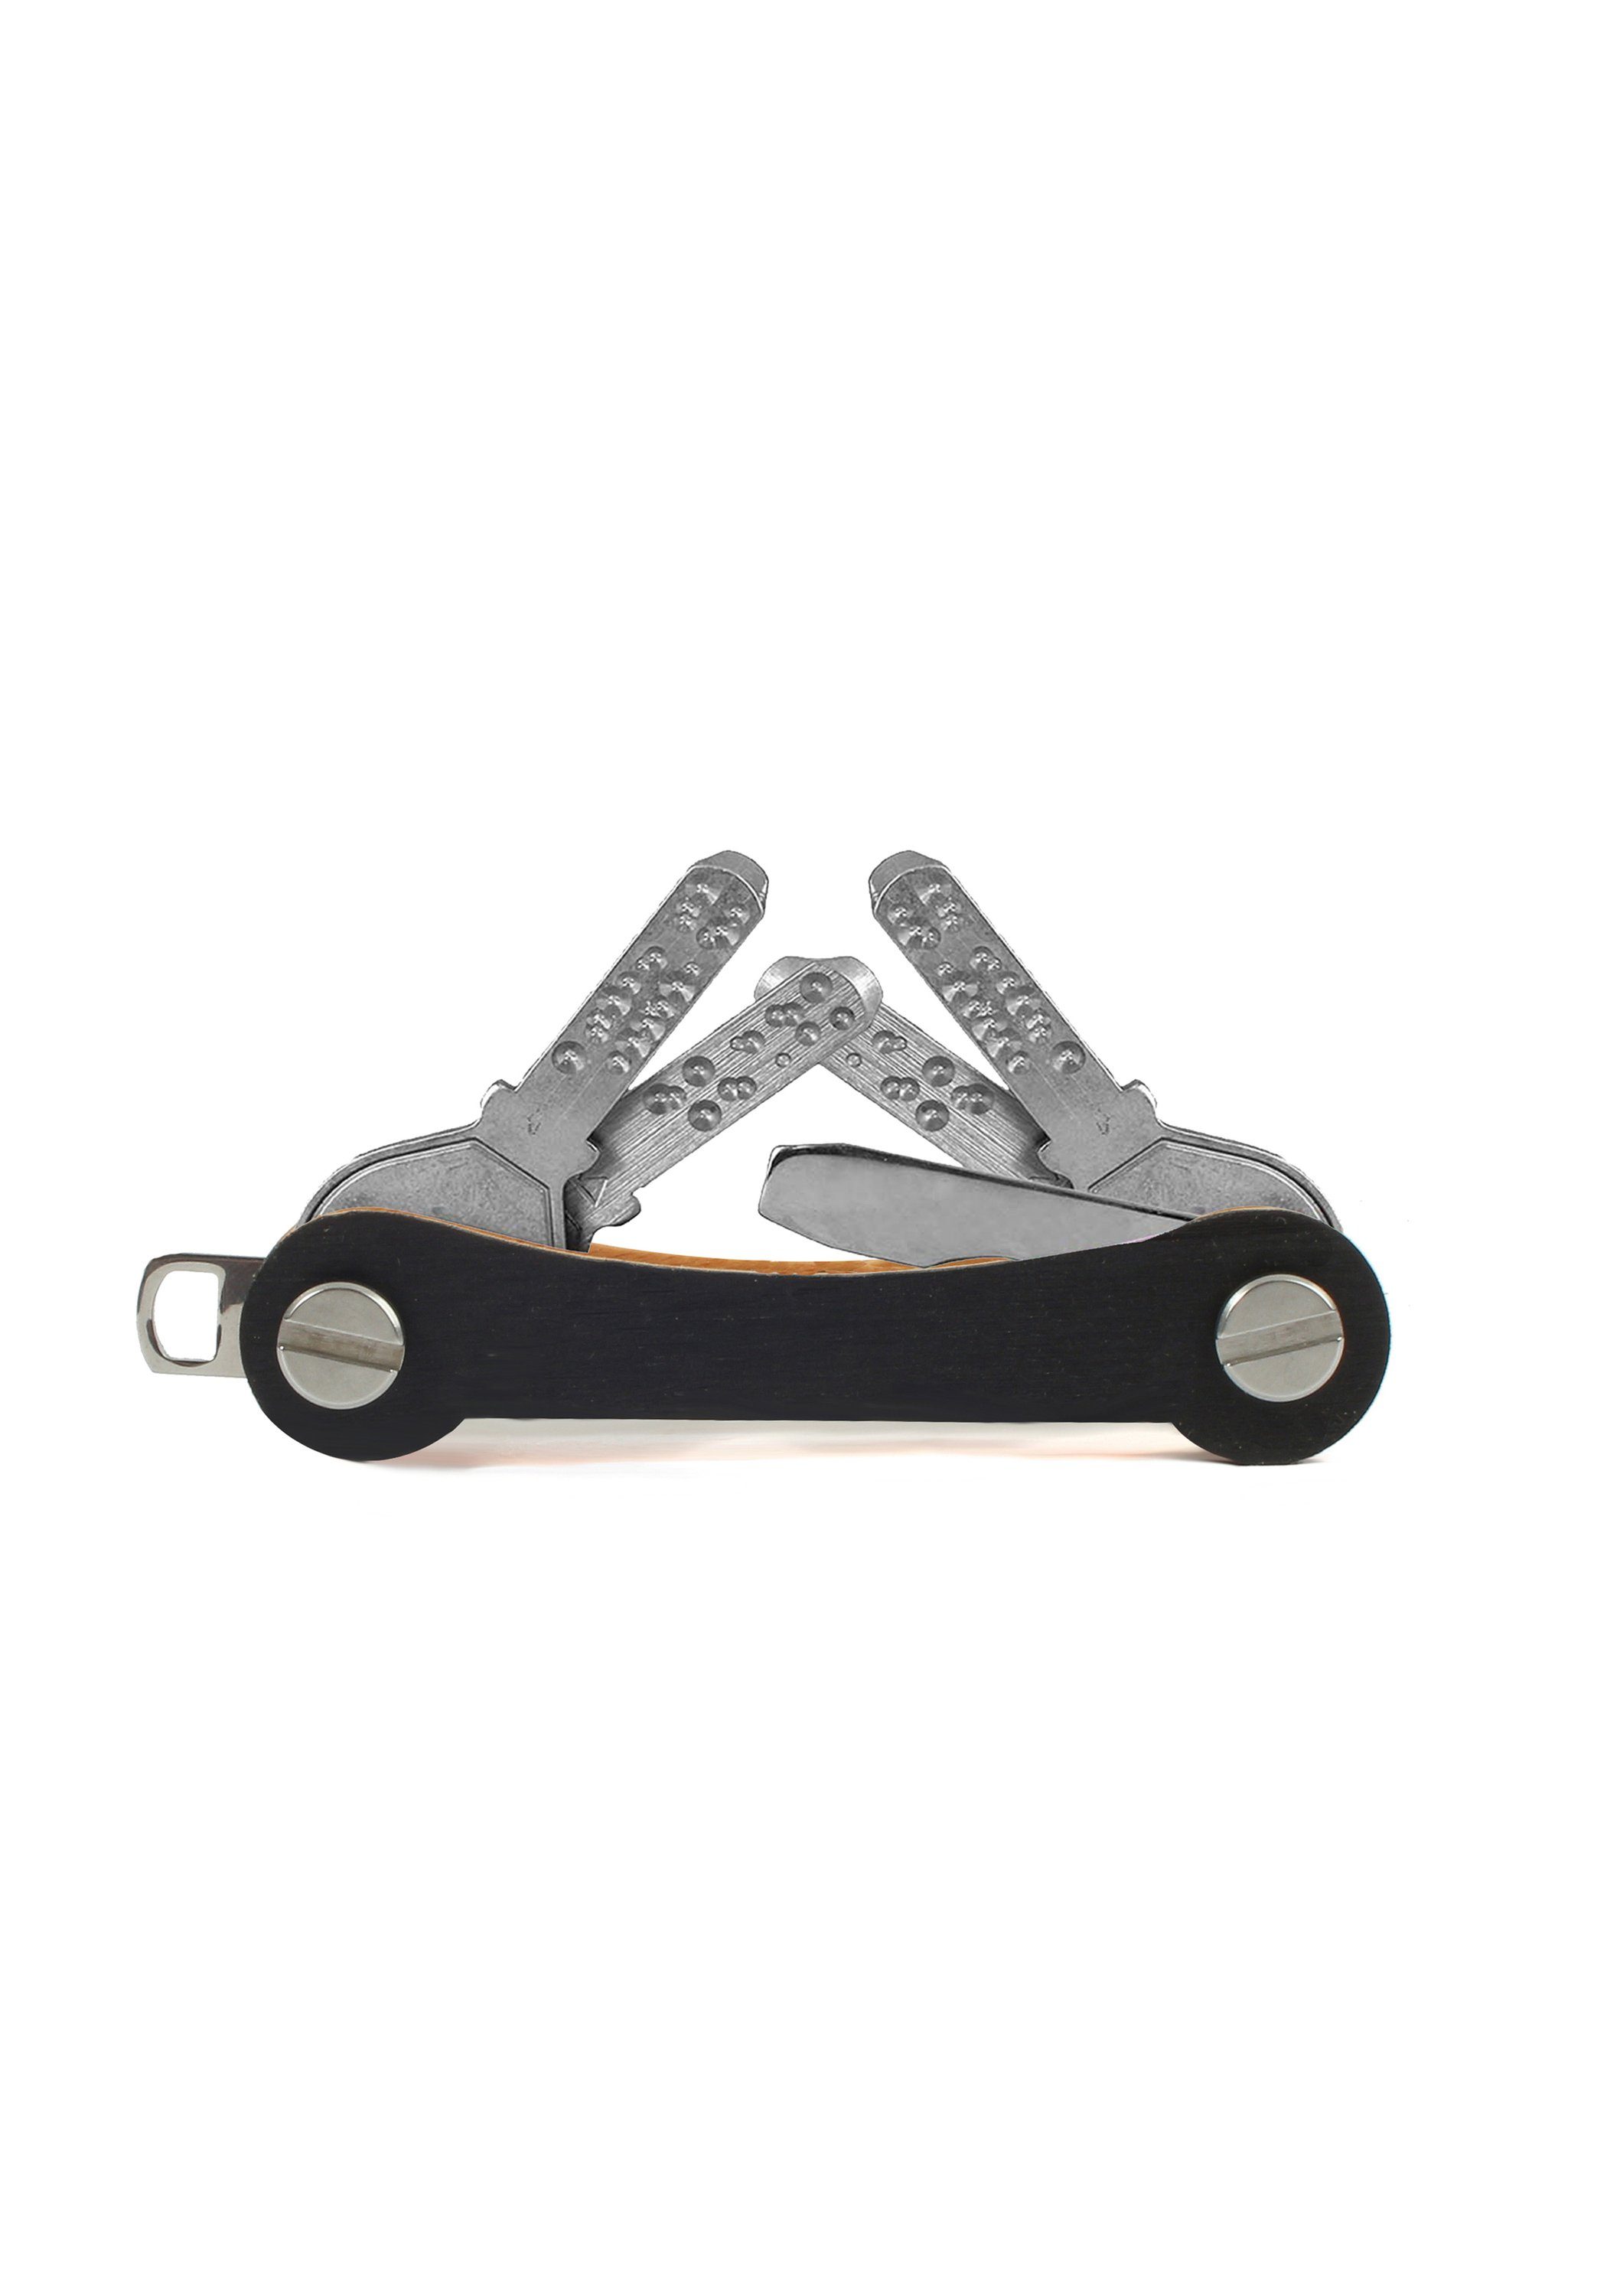 Schlüsselanhänger keycabins vanilla S1, Snowboard-Ski made SWISS